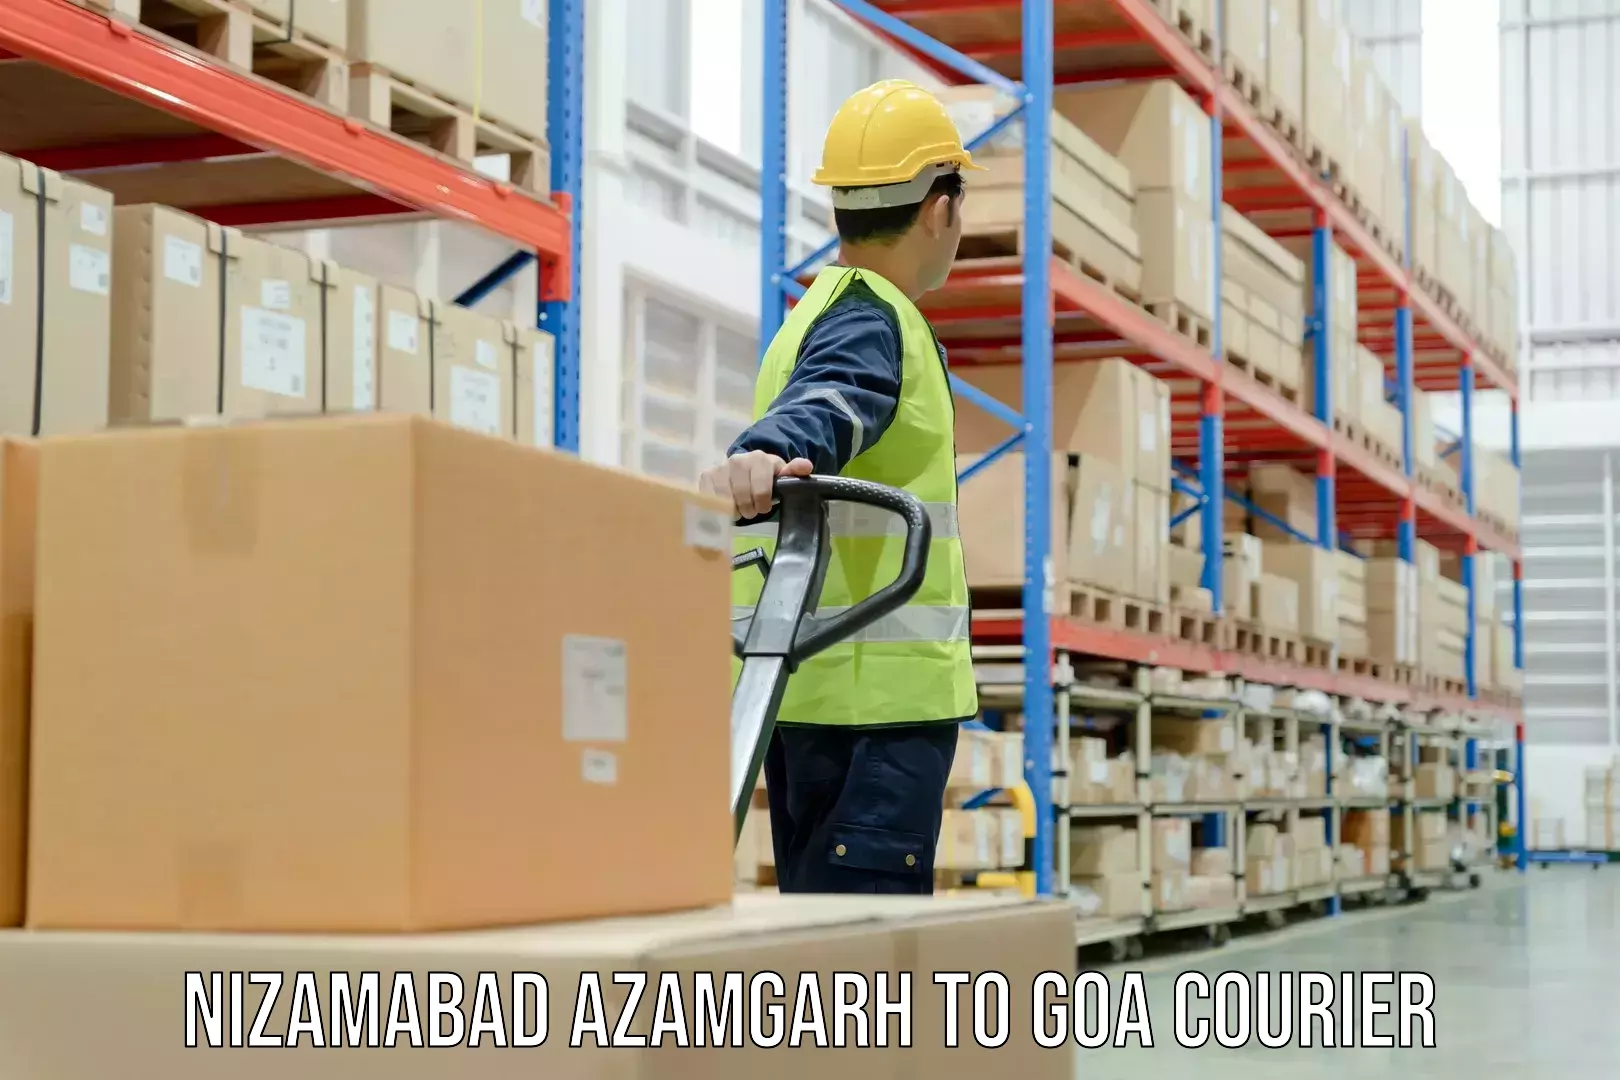 Individual parcel service Nizamabad Azamgarh to NIT Goa